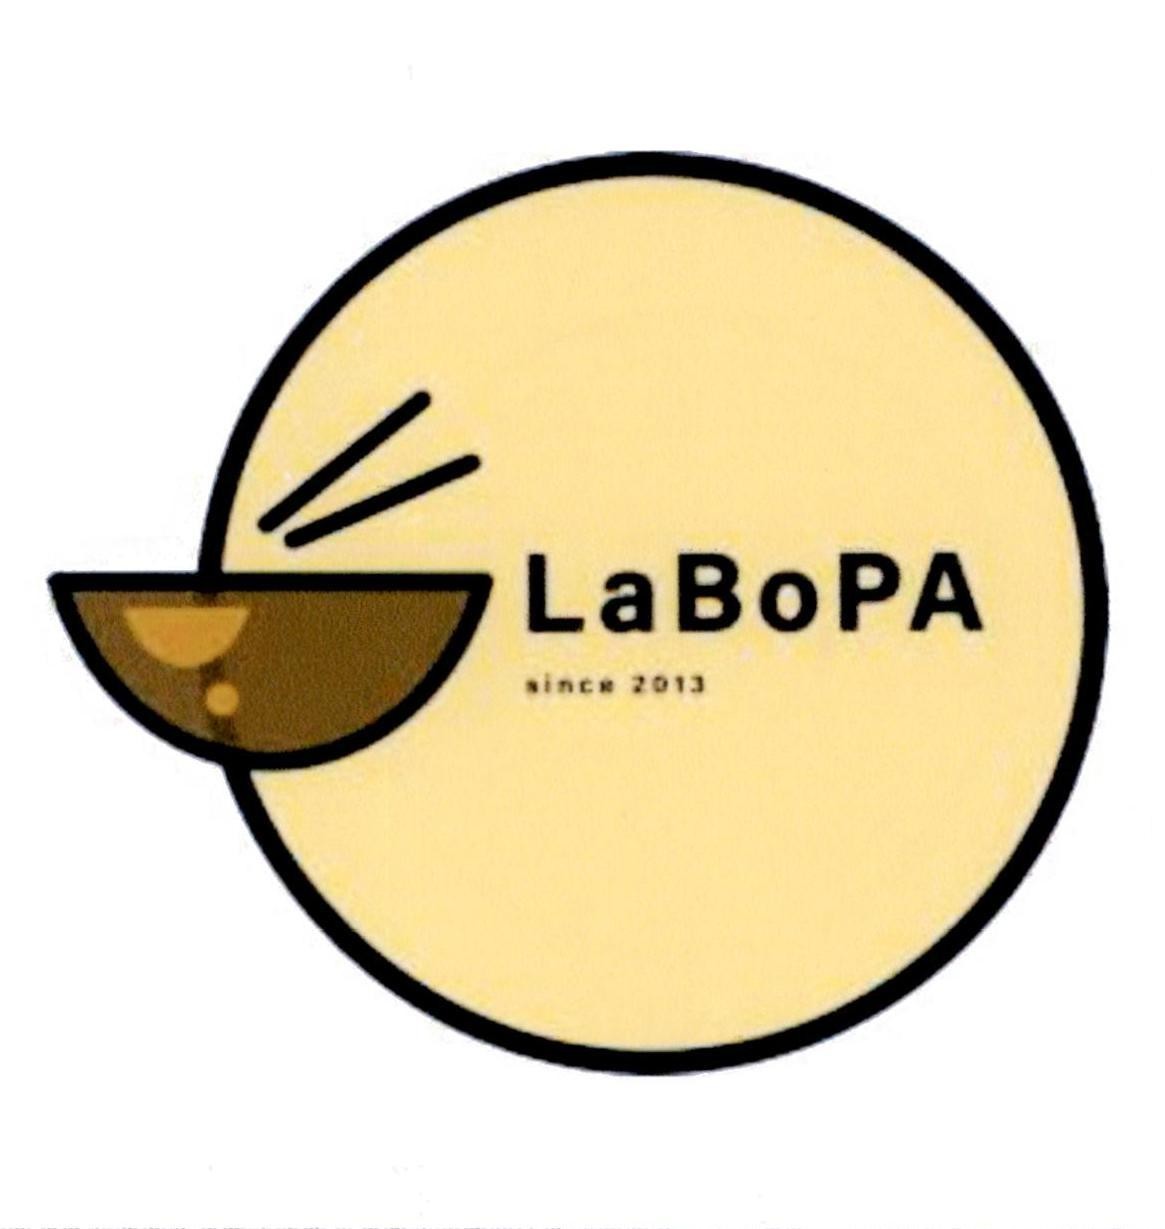 LaBoPA since 2013